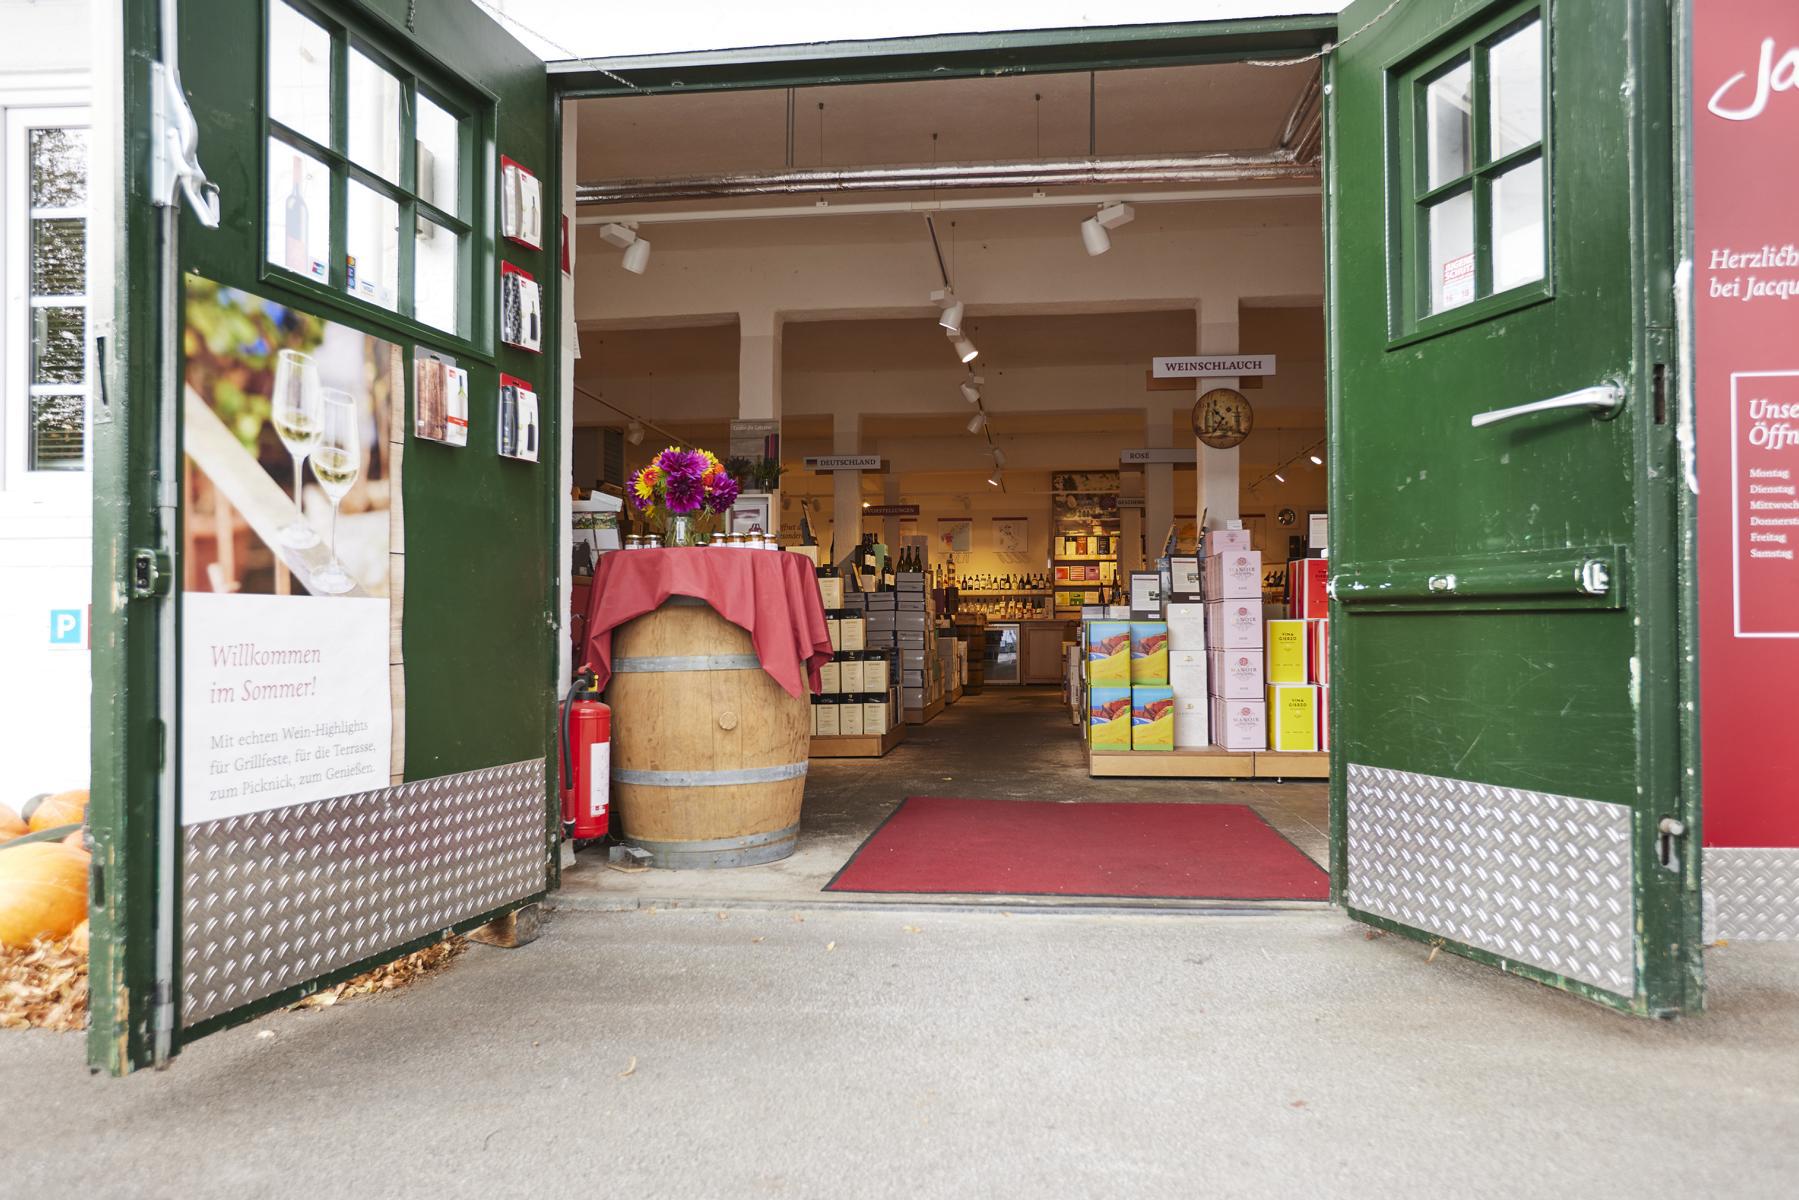 Bilder Jacques’ Wein-Depot Leverkusen